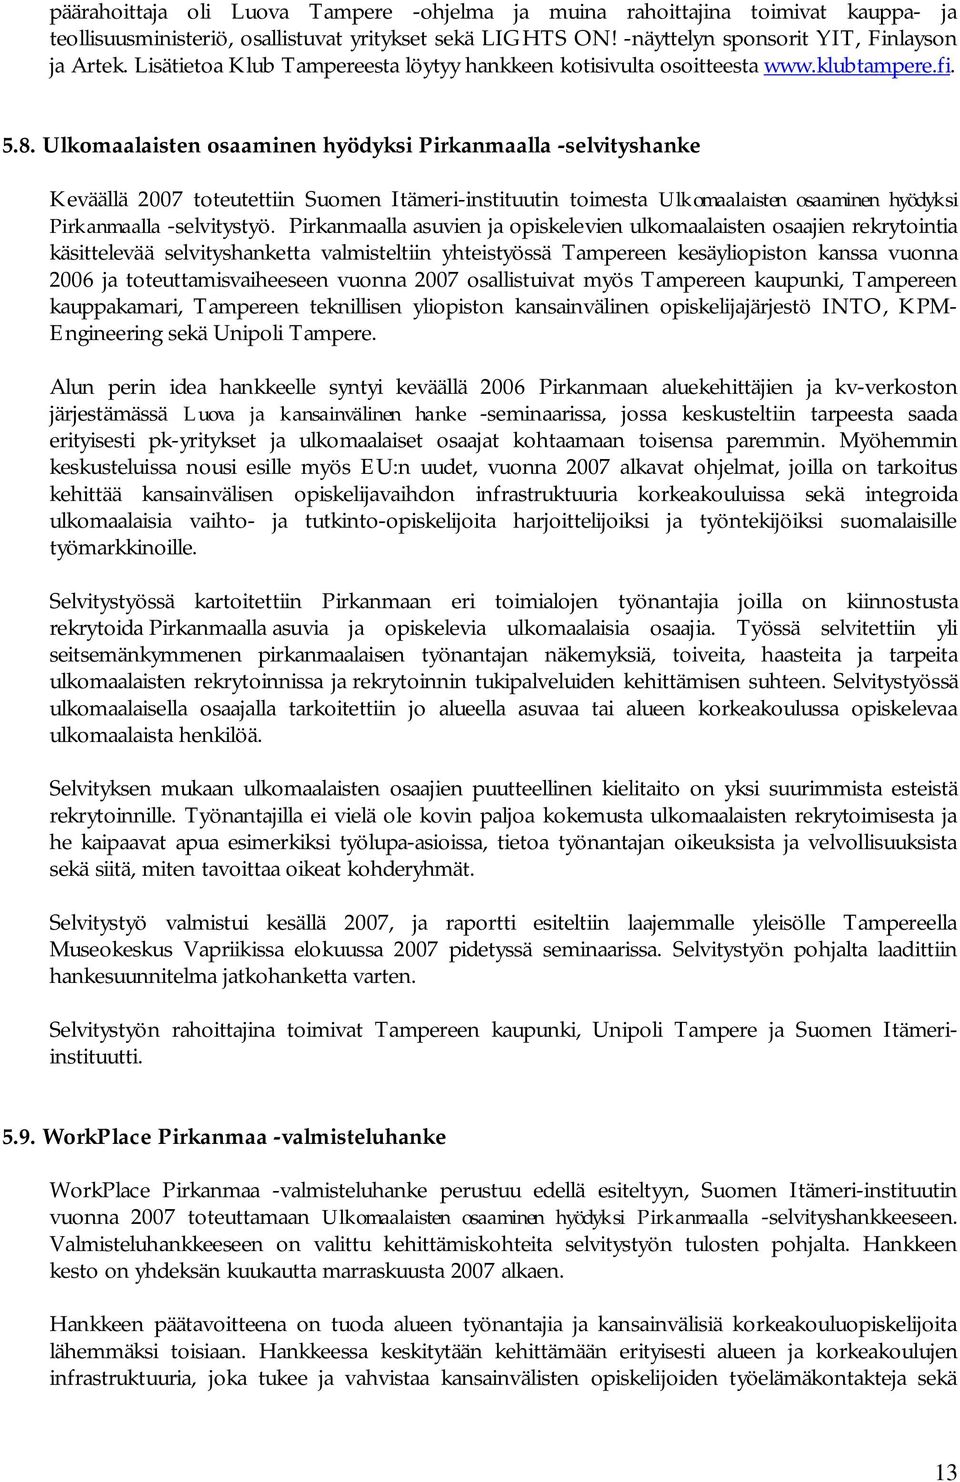 Ulkomaalaisten osaaminen hyödyksi Pirkanmaalla -selvityshanke Keväällä 2007 toteutettiin Suomen Itämeri-instituutin toimesta Ulkomaalaisten osaaminen hyödyksi Pirkanmaalla -selvitystyö.